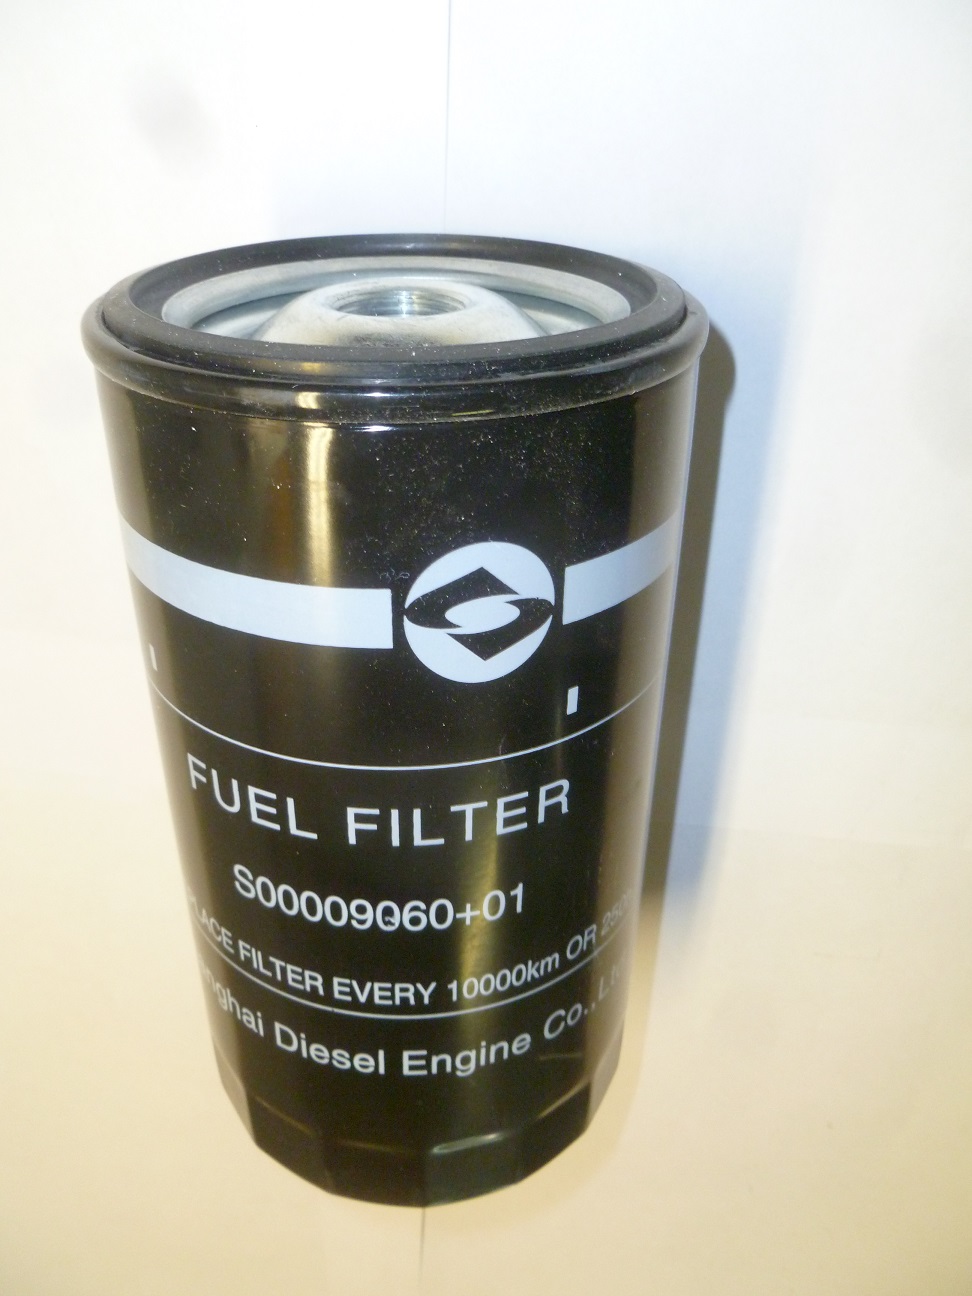 Фильтр топливный SDEC SC9D340D2 TDS 228 6LT/Fuel filter S00009060+01